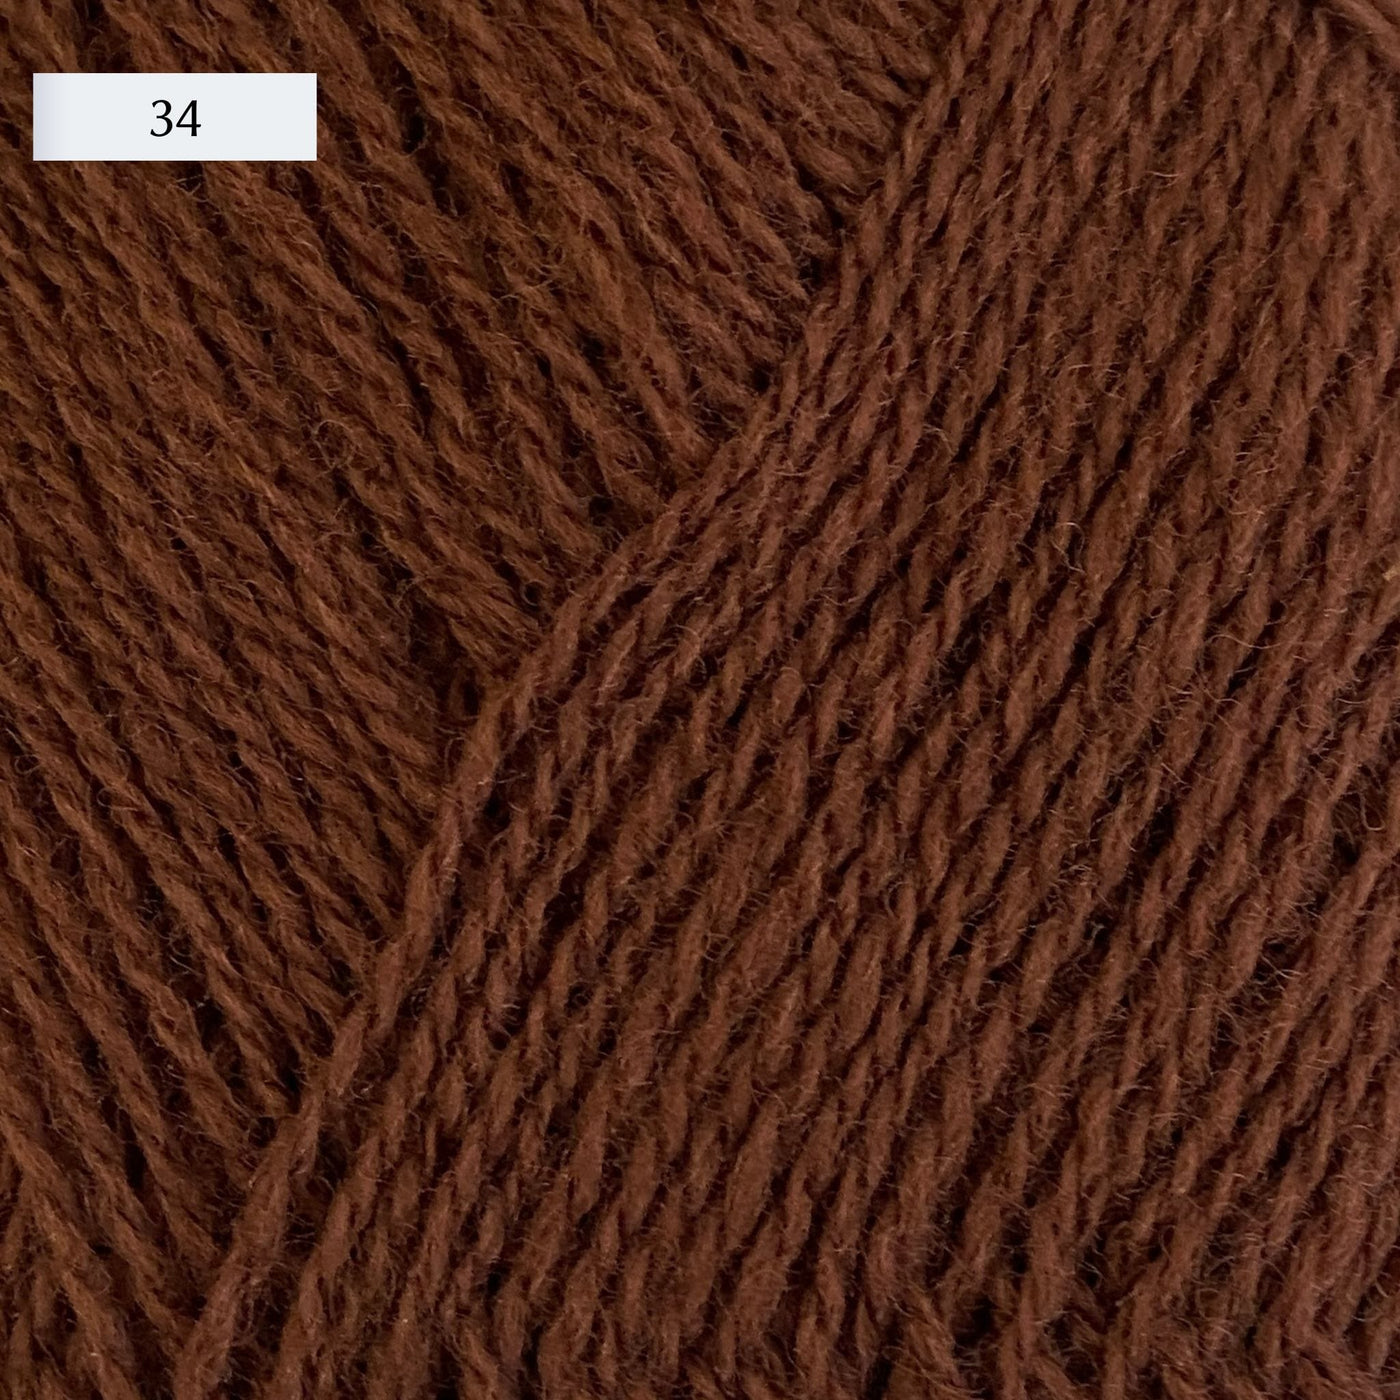 Rauma Lamullgarn, a fingering weight yarn, in color 34, a medium brown